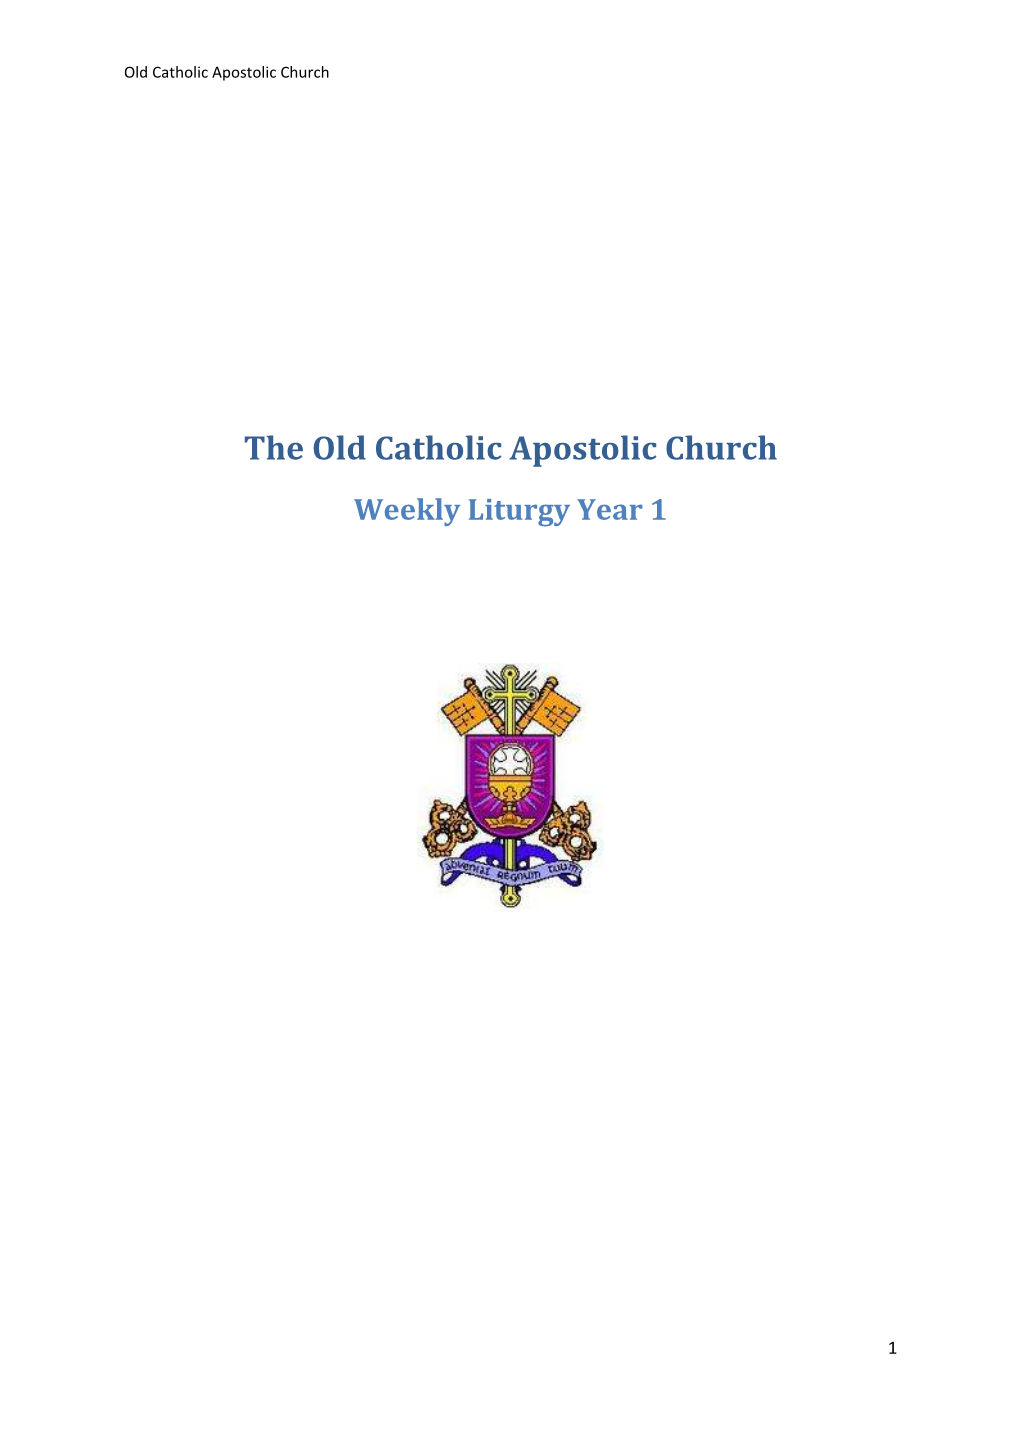 Liturgy of the Old Catholic Apostolic